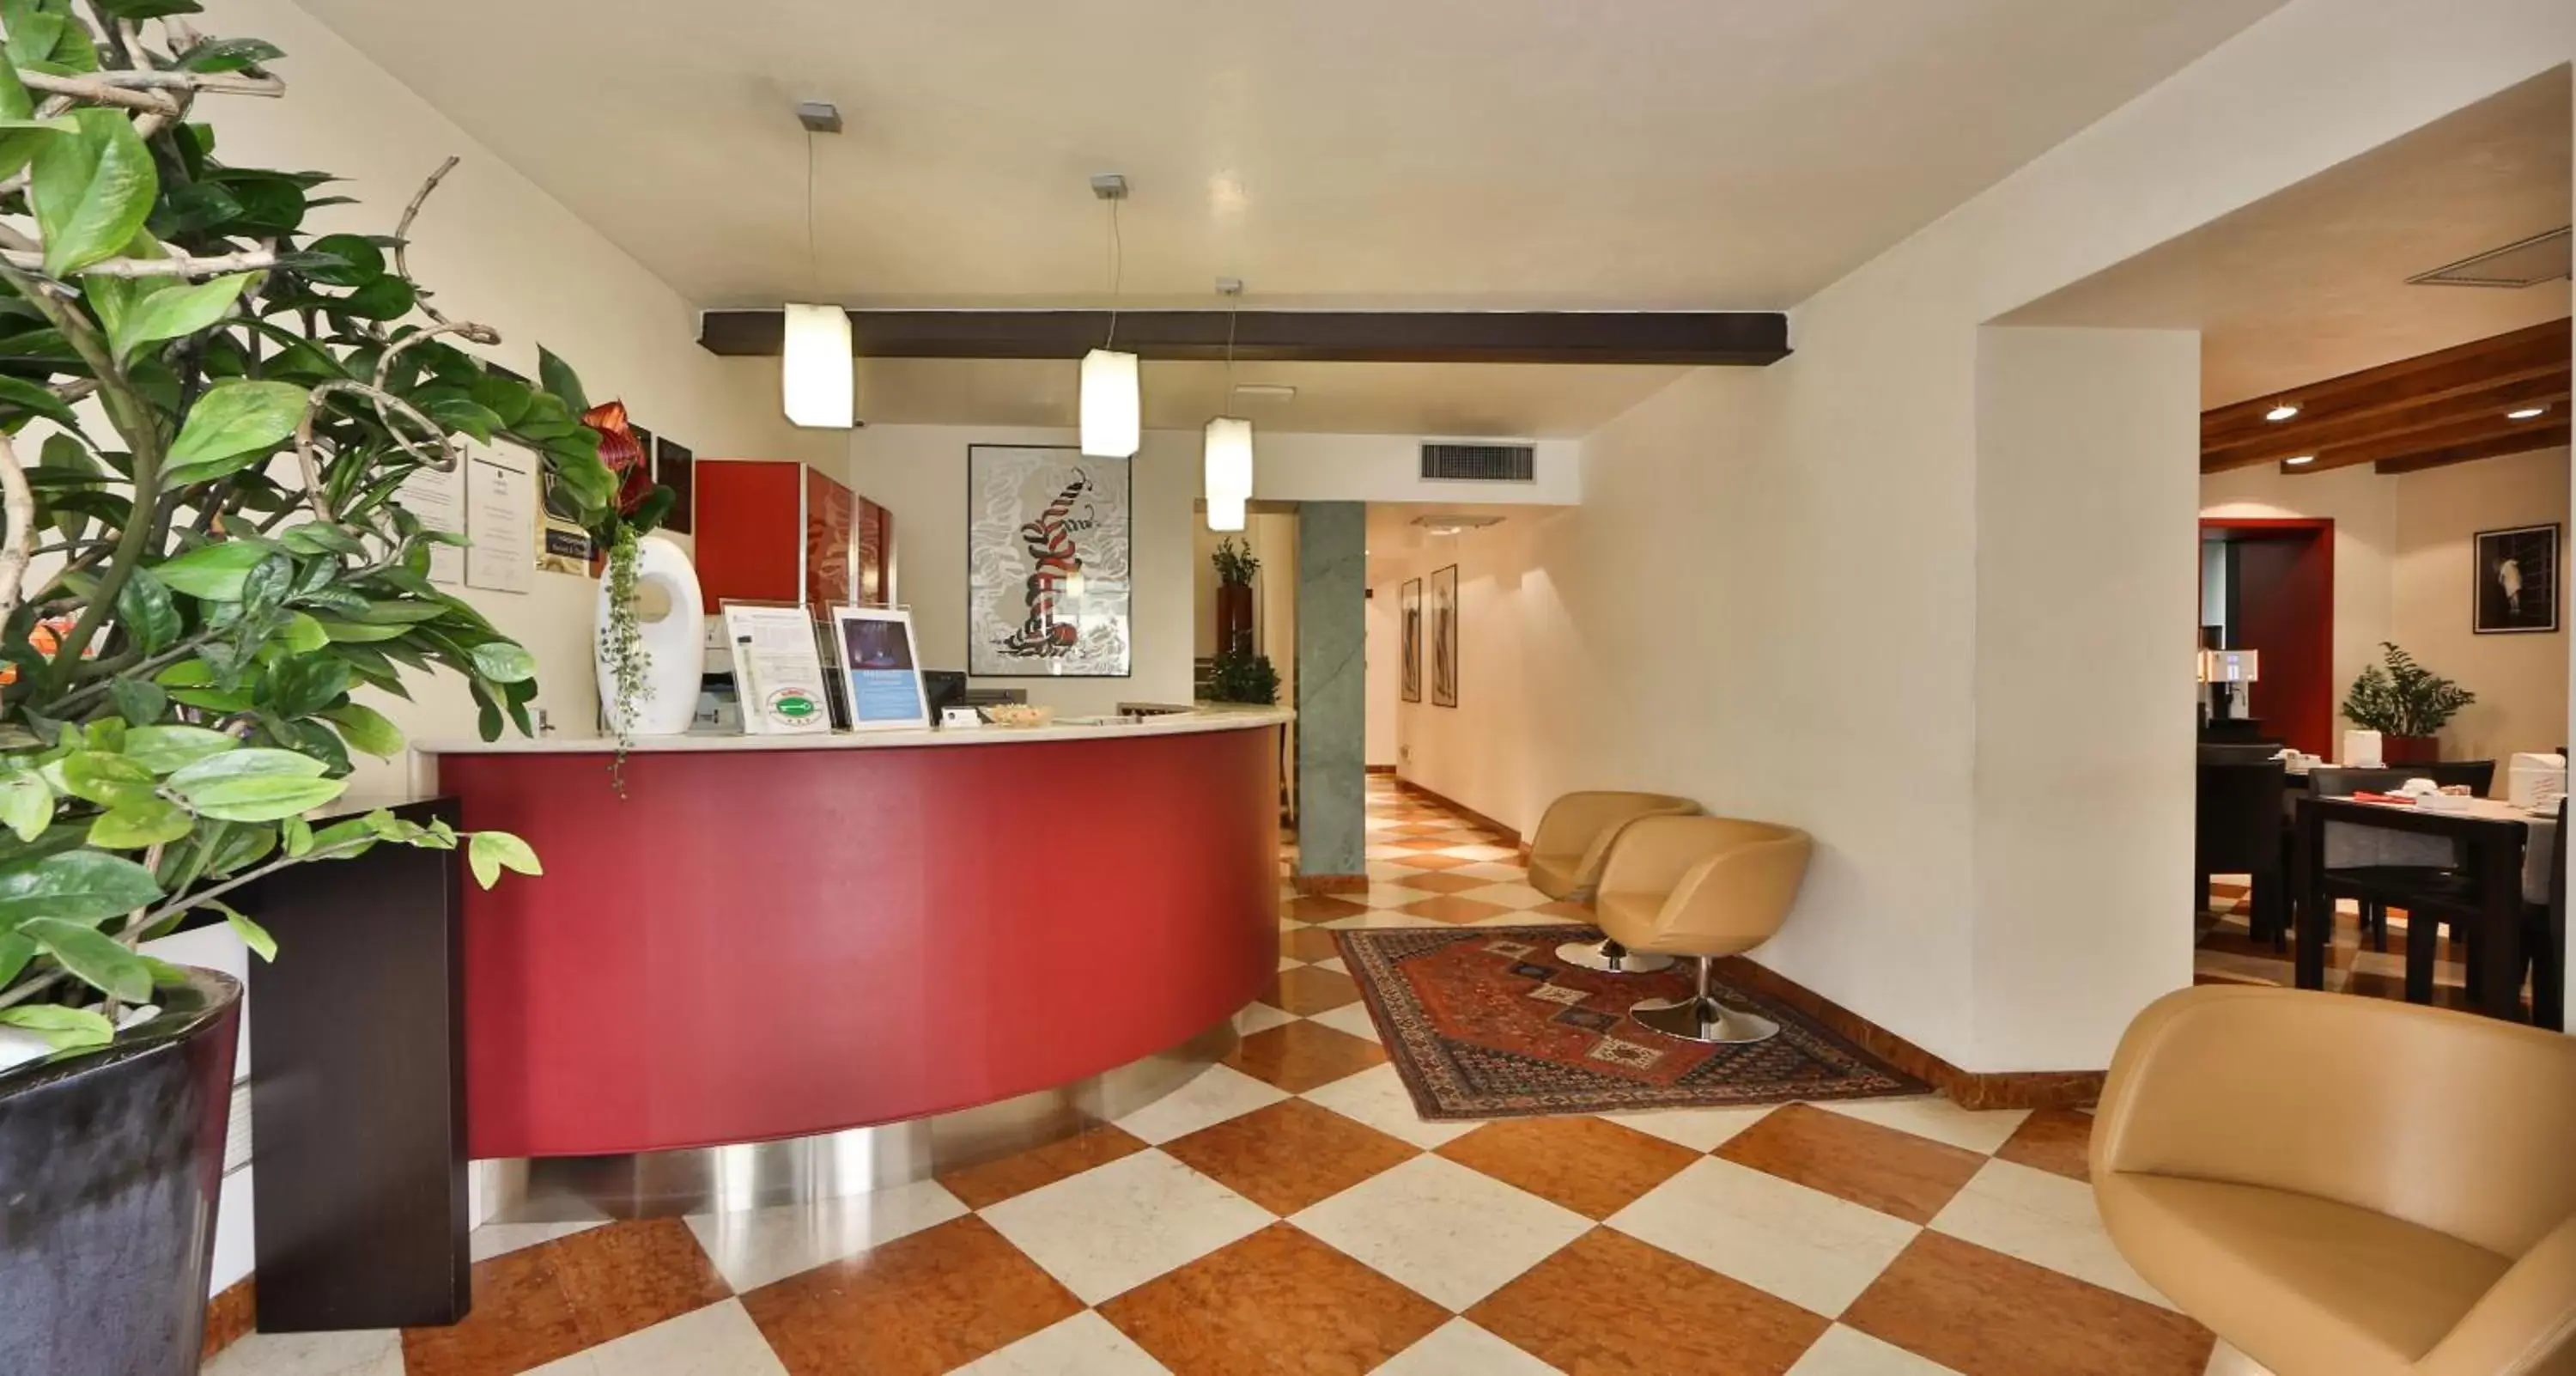 Lobby or reception, Lobby/Reception in Best Western Hotel Armando